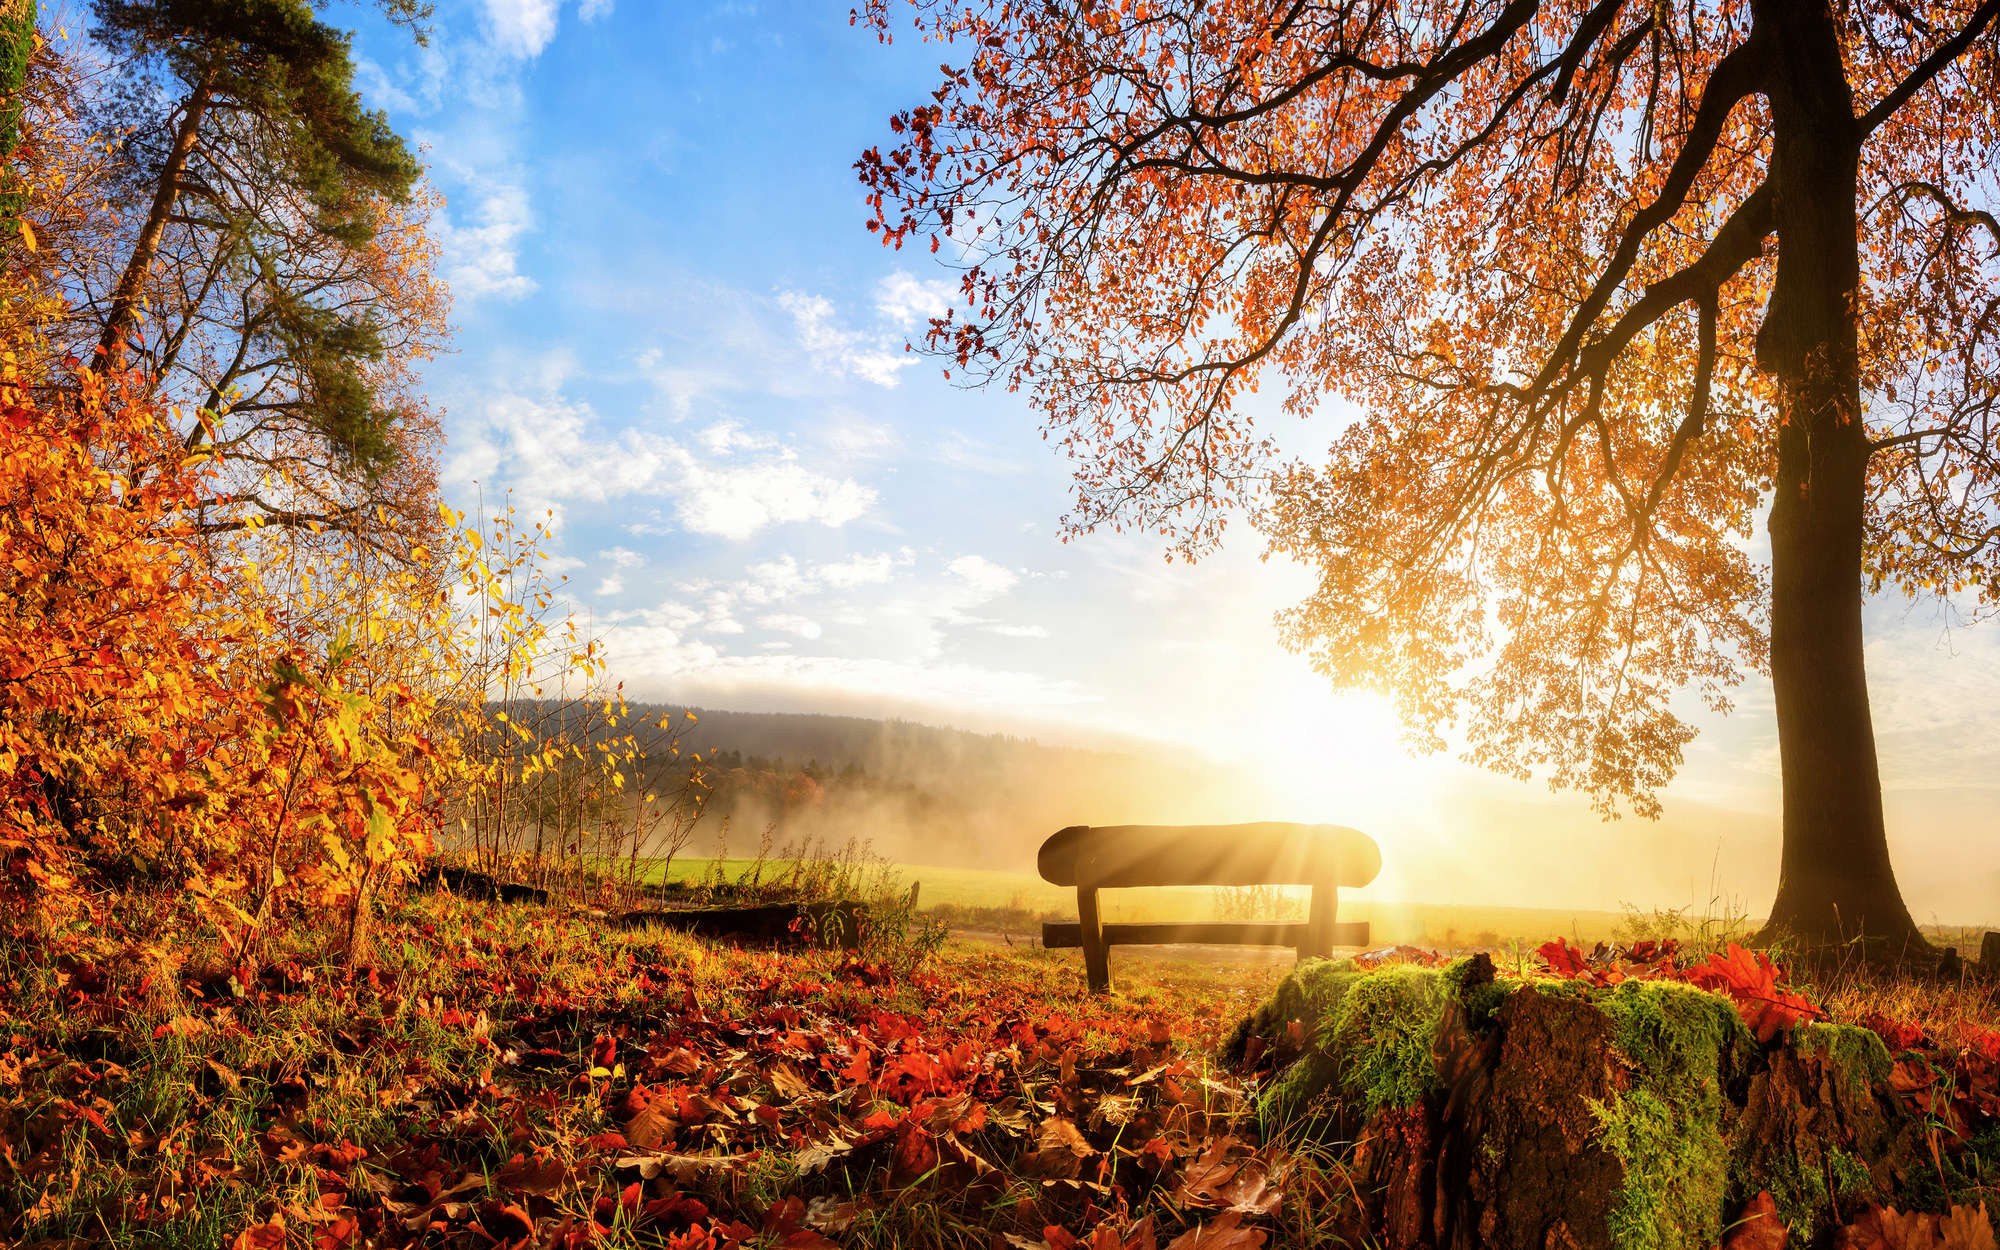             Digital behang bank in het bos op een herfstochtend - parelmoer glad vlies
        